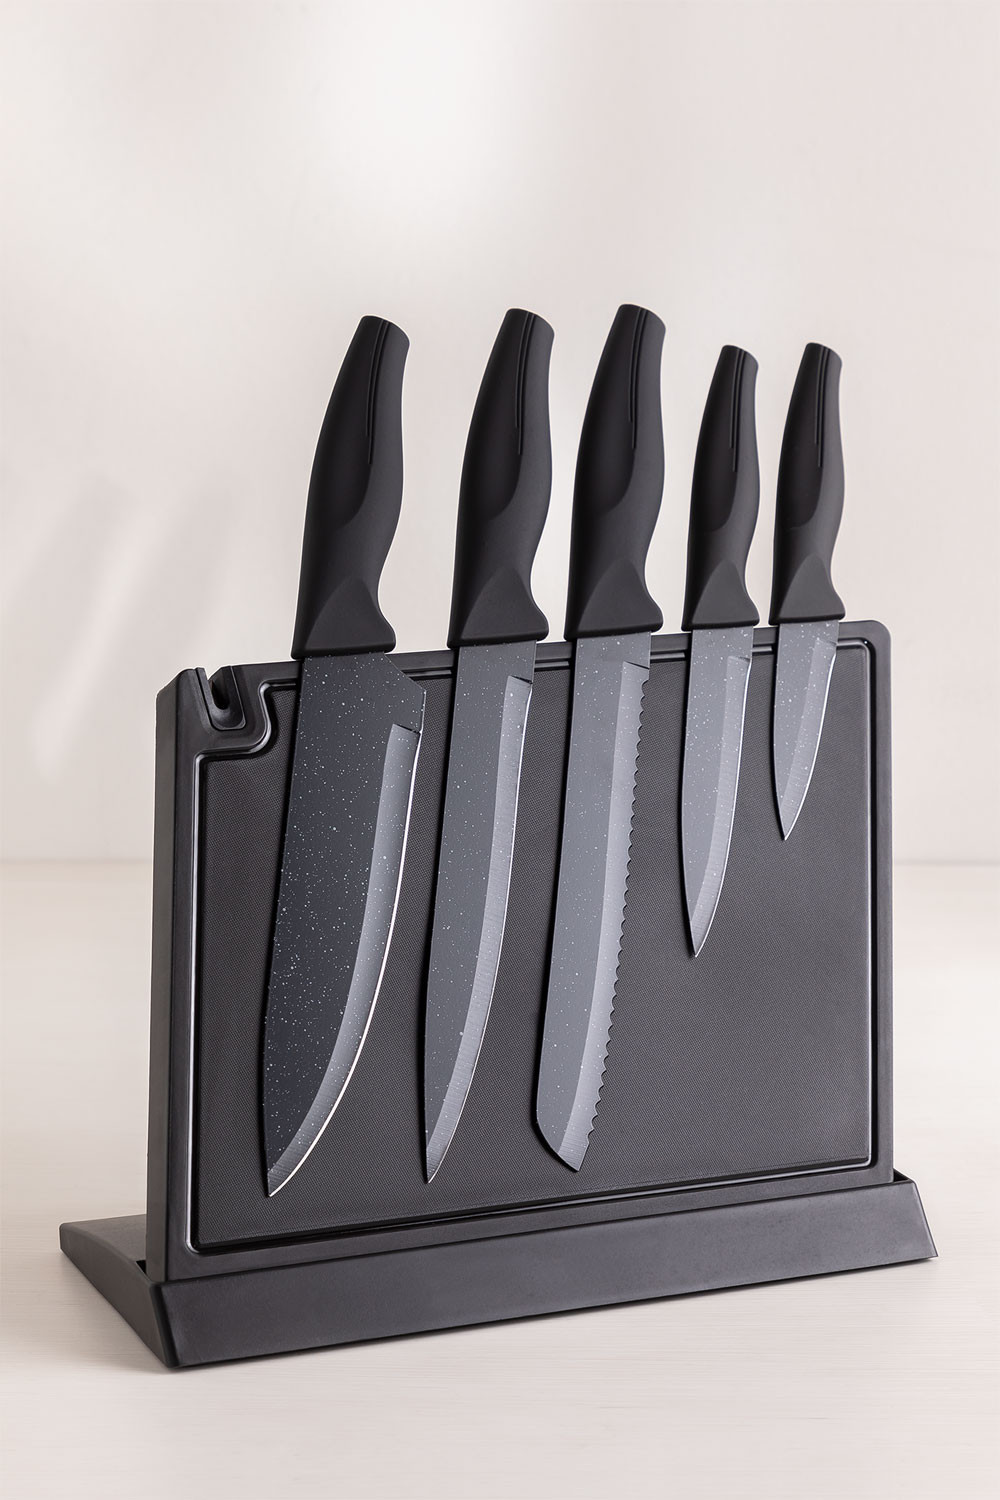 D.Perlla Couteaux de Cuisine, Set Couteau de Cuisine 16 Pièces en